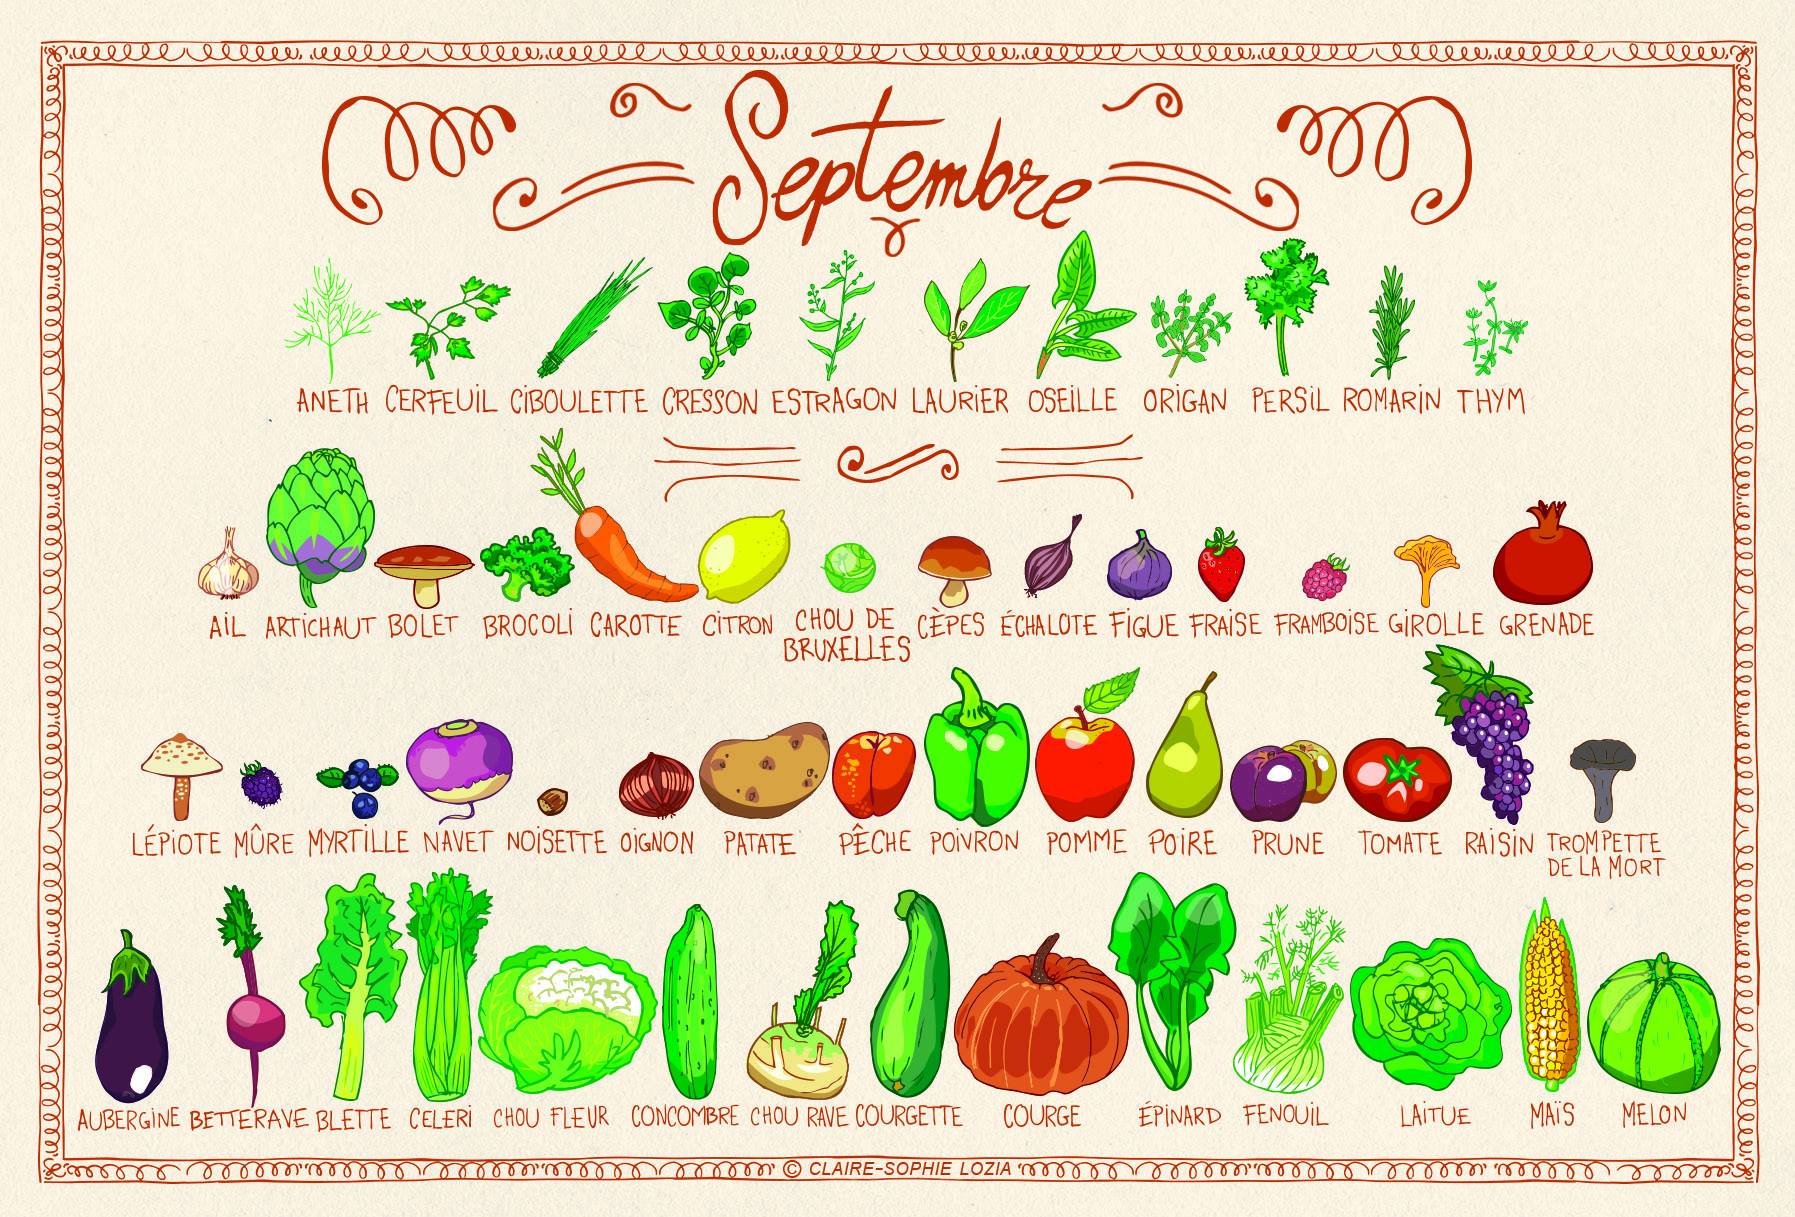 Résultat de recherche d'images pour "légumes saison septembre"